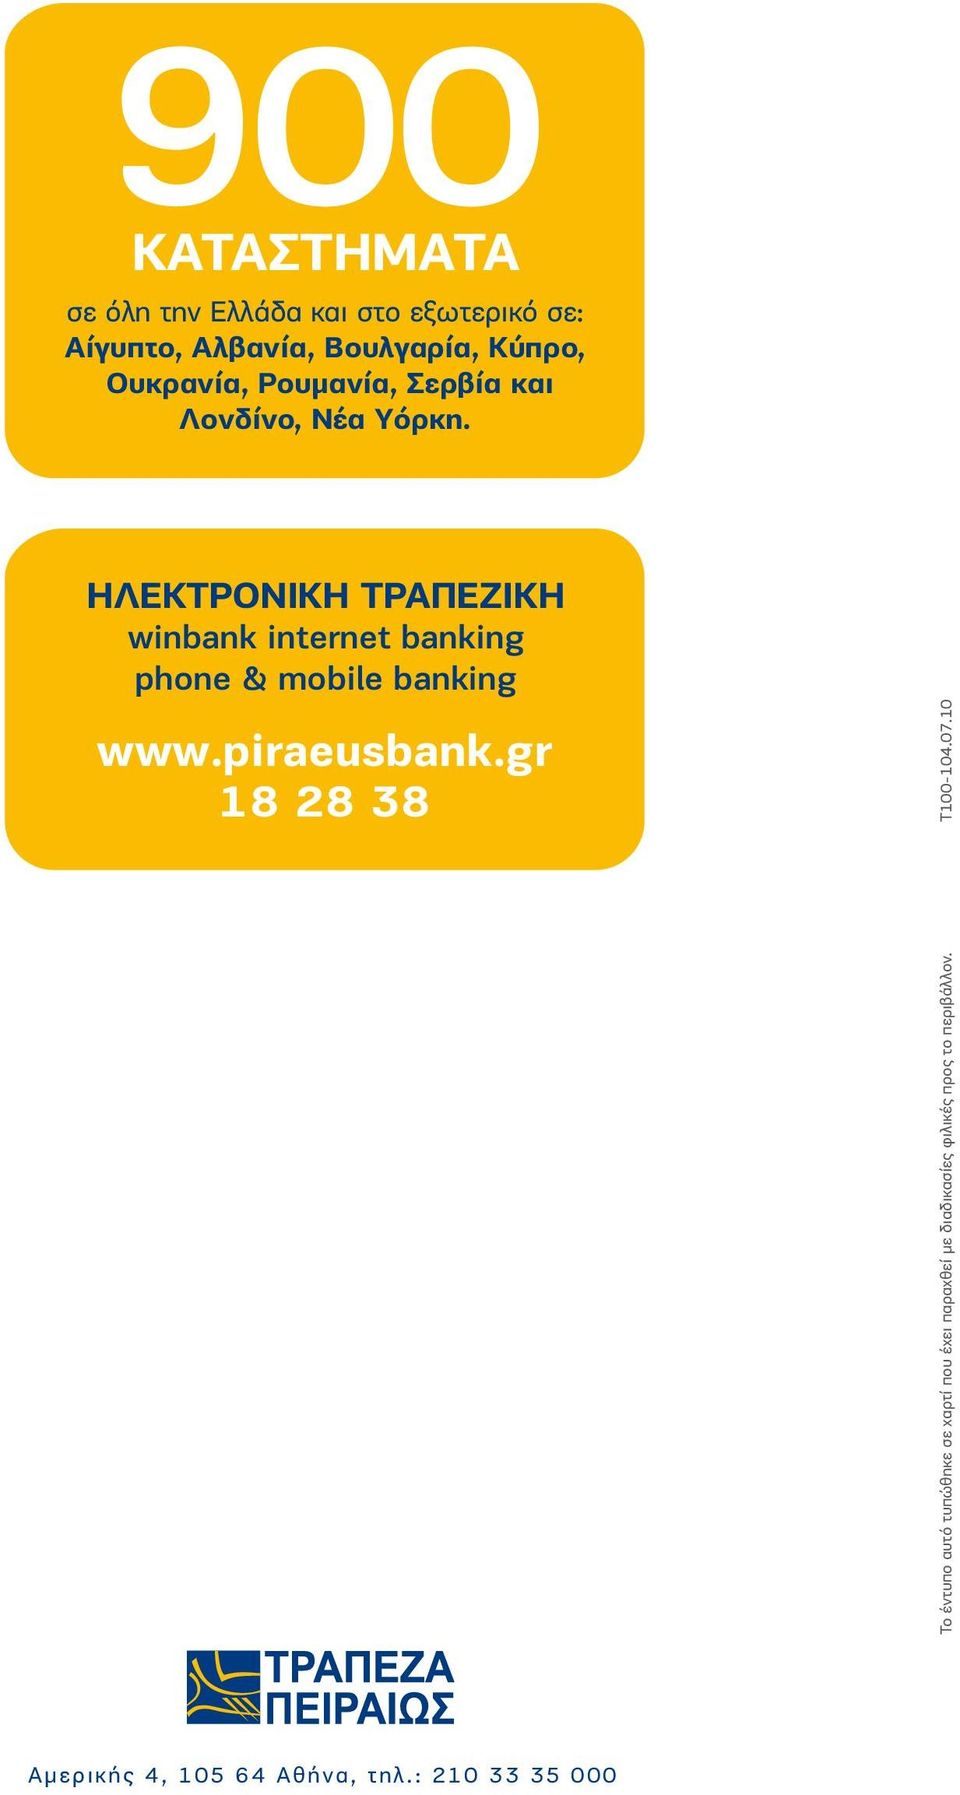 ΗΛΕΚΤΡΟΝΙΚΗ ΤΡΑΠΕΖΙΚΗ winbank internet banking phone & mobile banking www.piraeusbank.